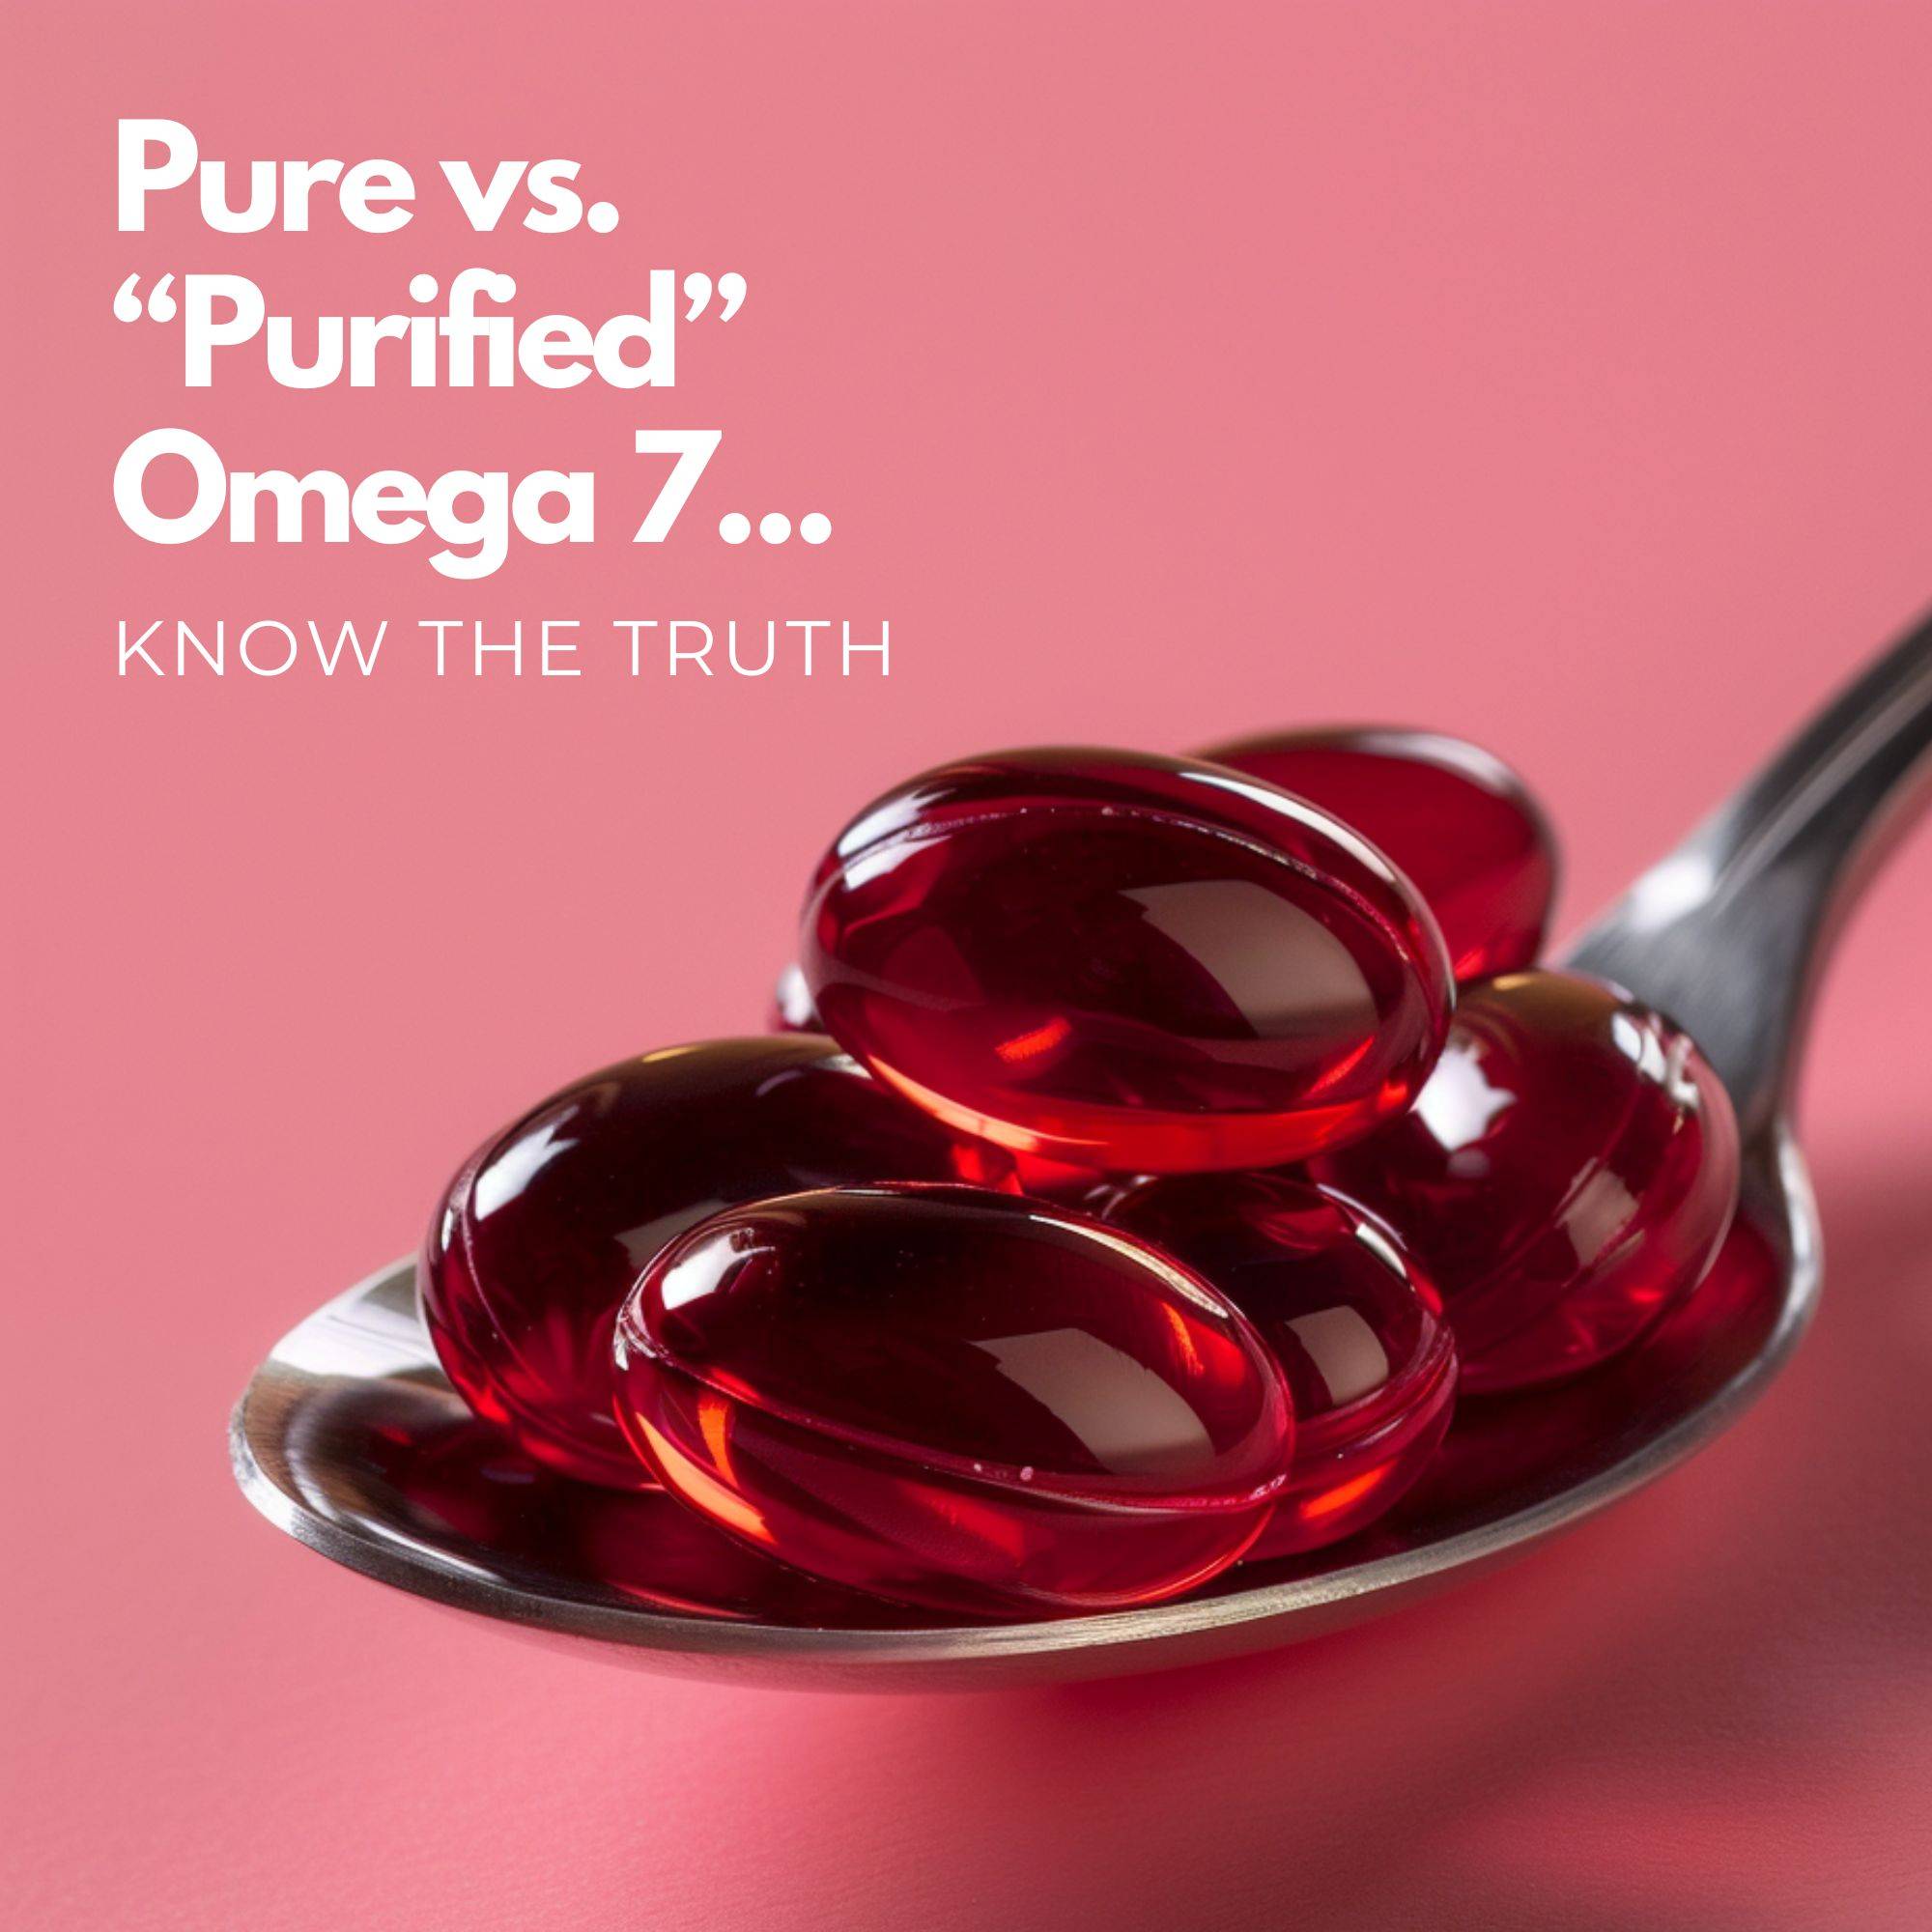 pure omega 7 vs. purified omega 7